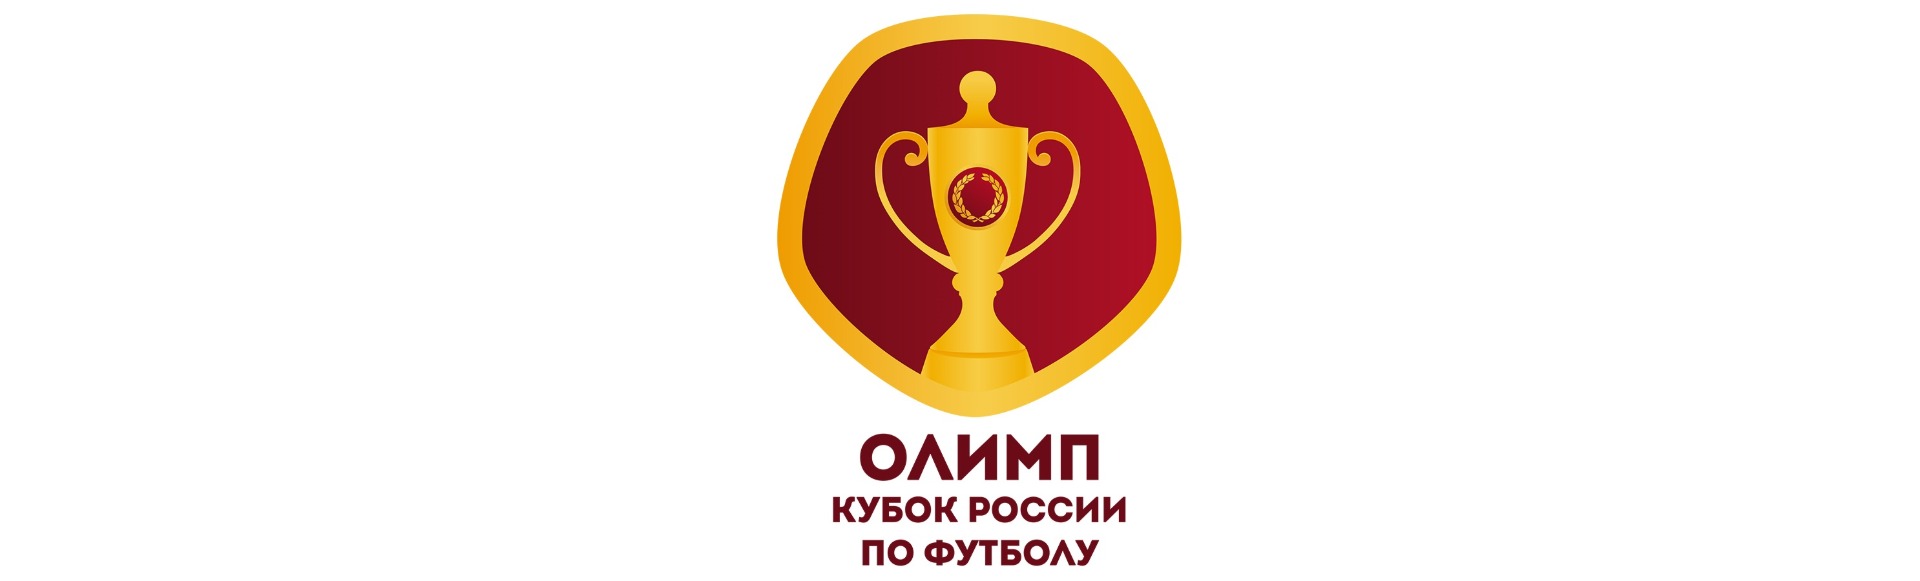 Химки - Зенит. Финал кубка России по футболу